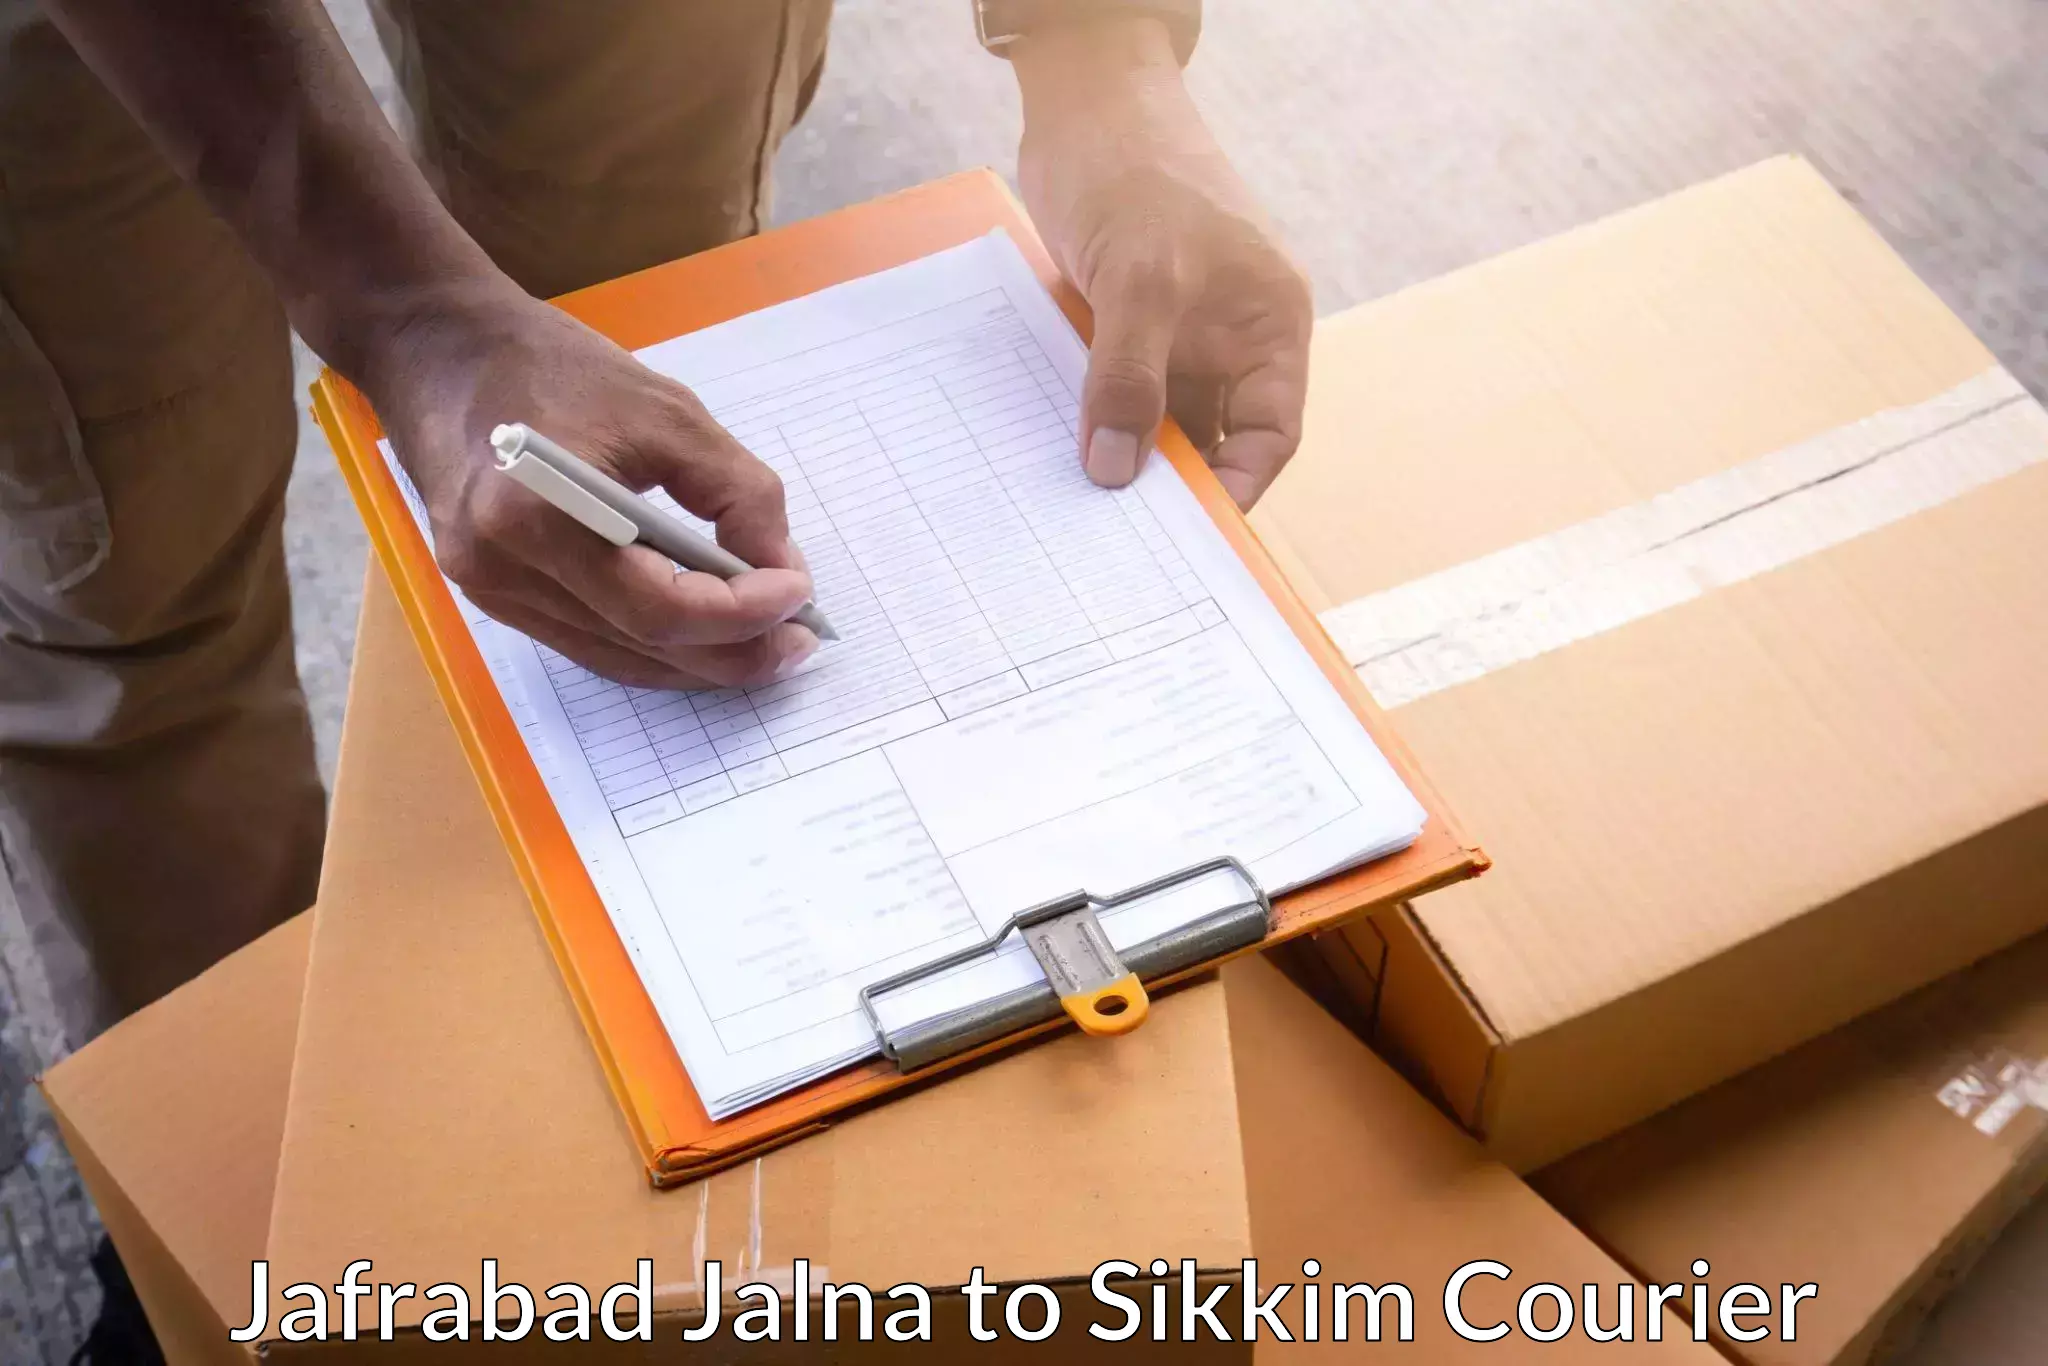 Bulk shipment in Jafrabad Jalna to Ranipool